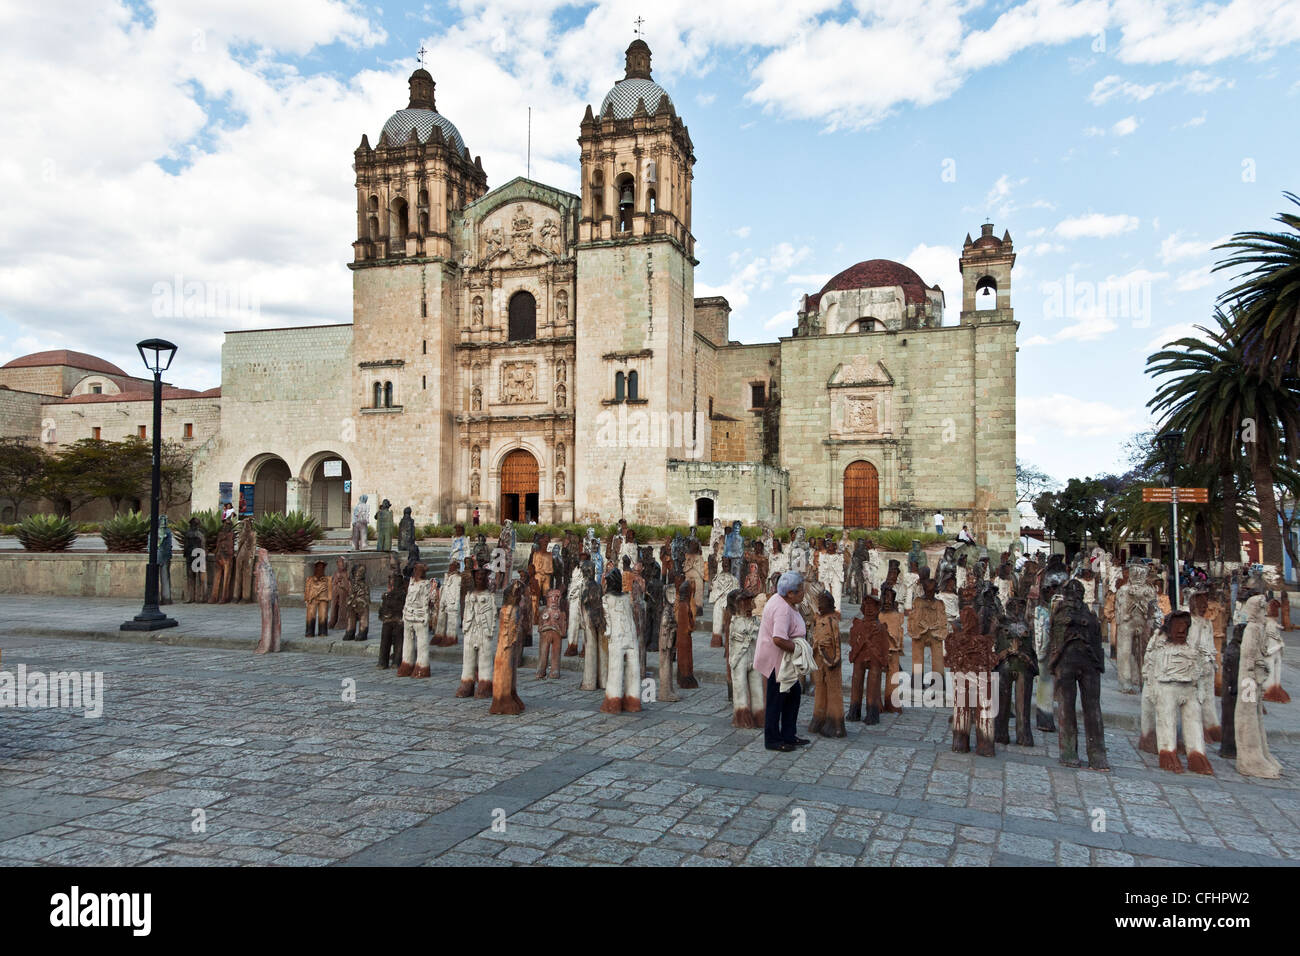 Du vrai mexicains se mêlent dans une foule de près de l'argile grandeur figurines chiffres en face de l'église de Santo Domingo à Oaxaca au Mexique Banque D'Images